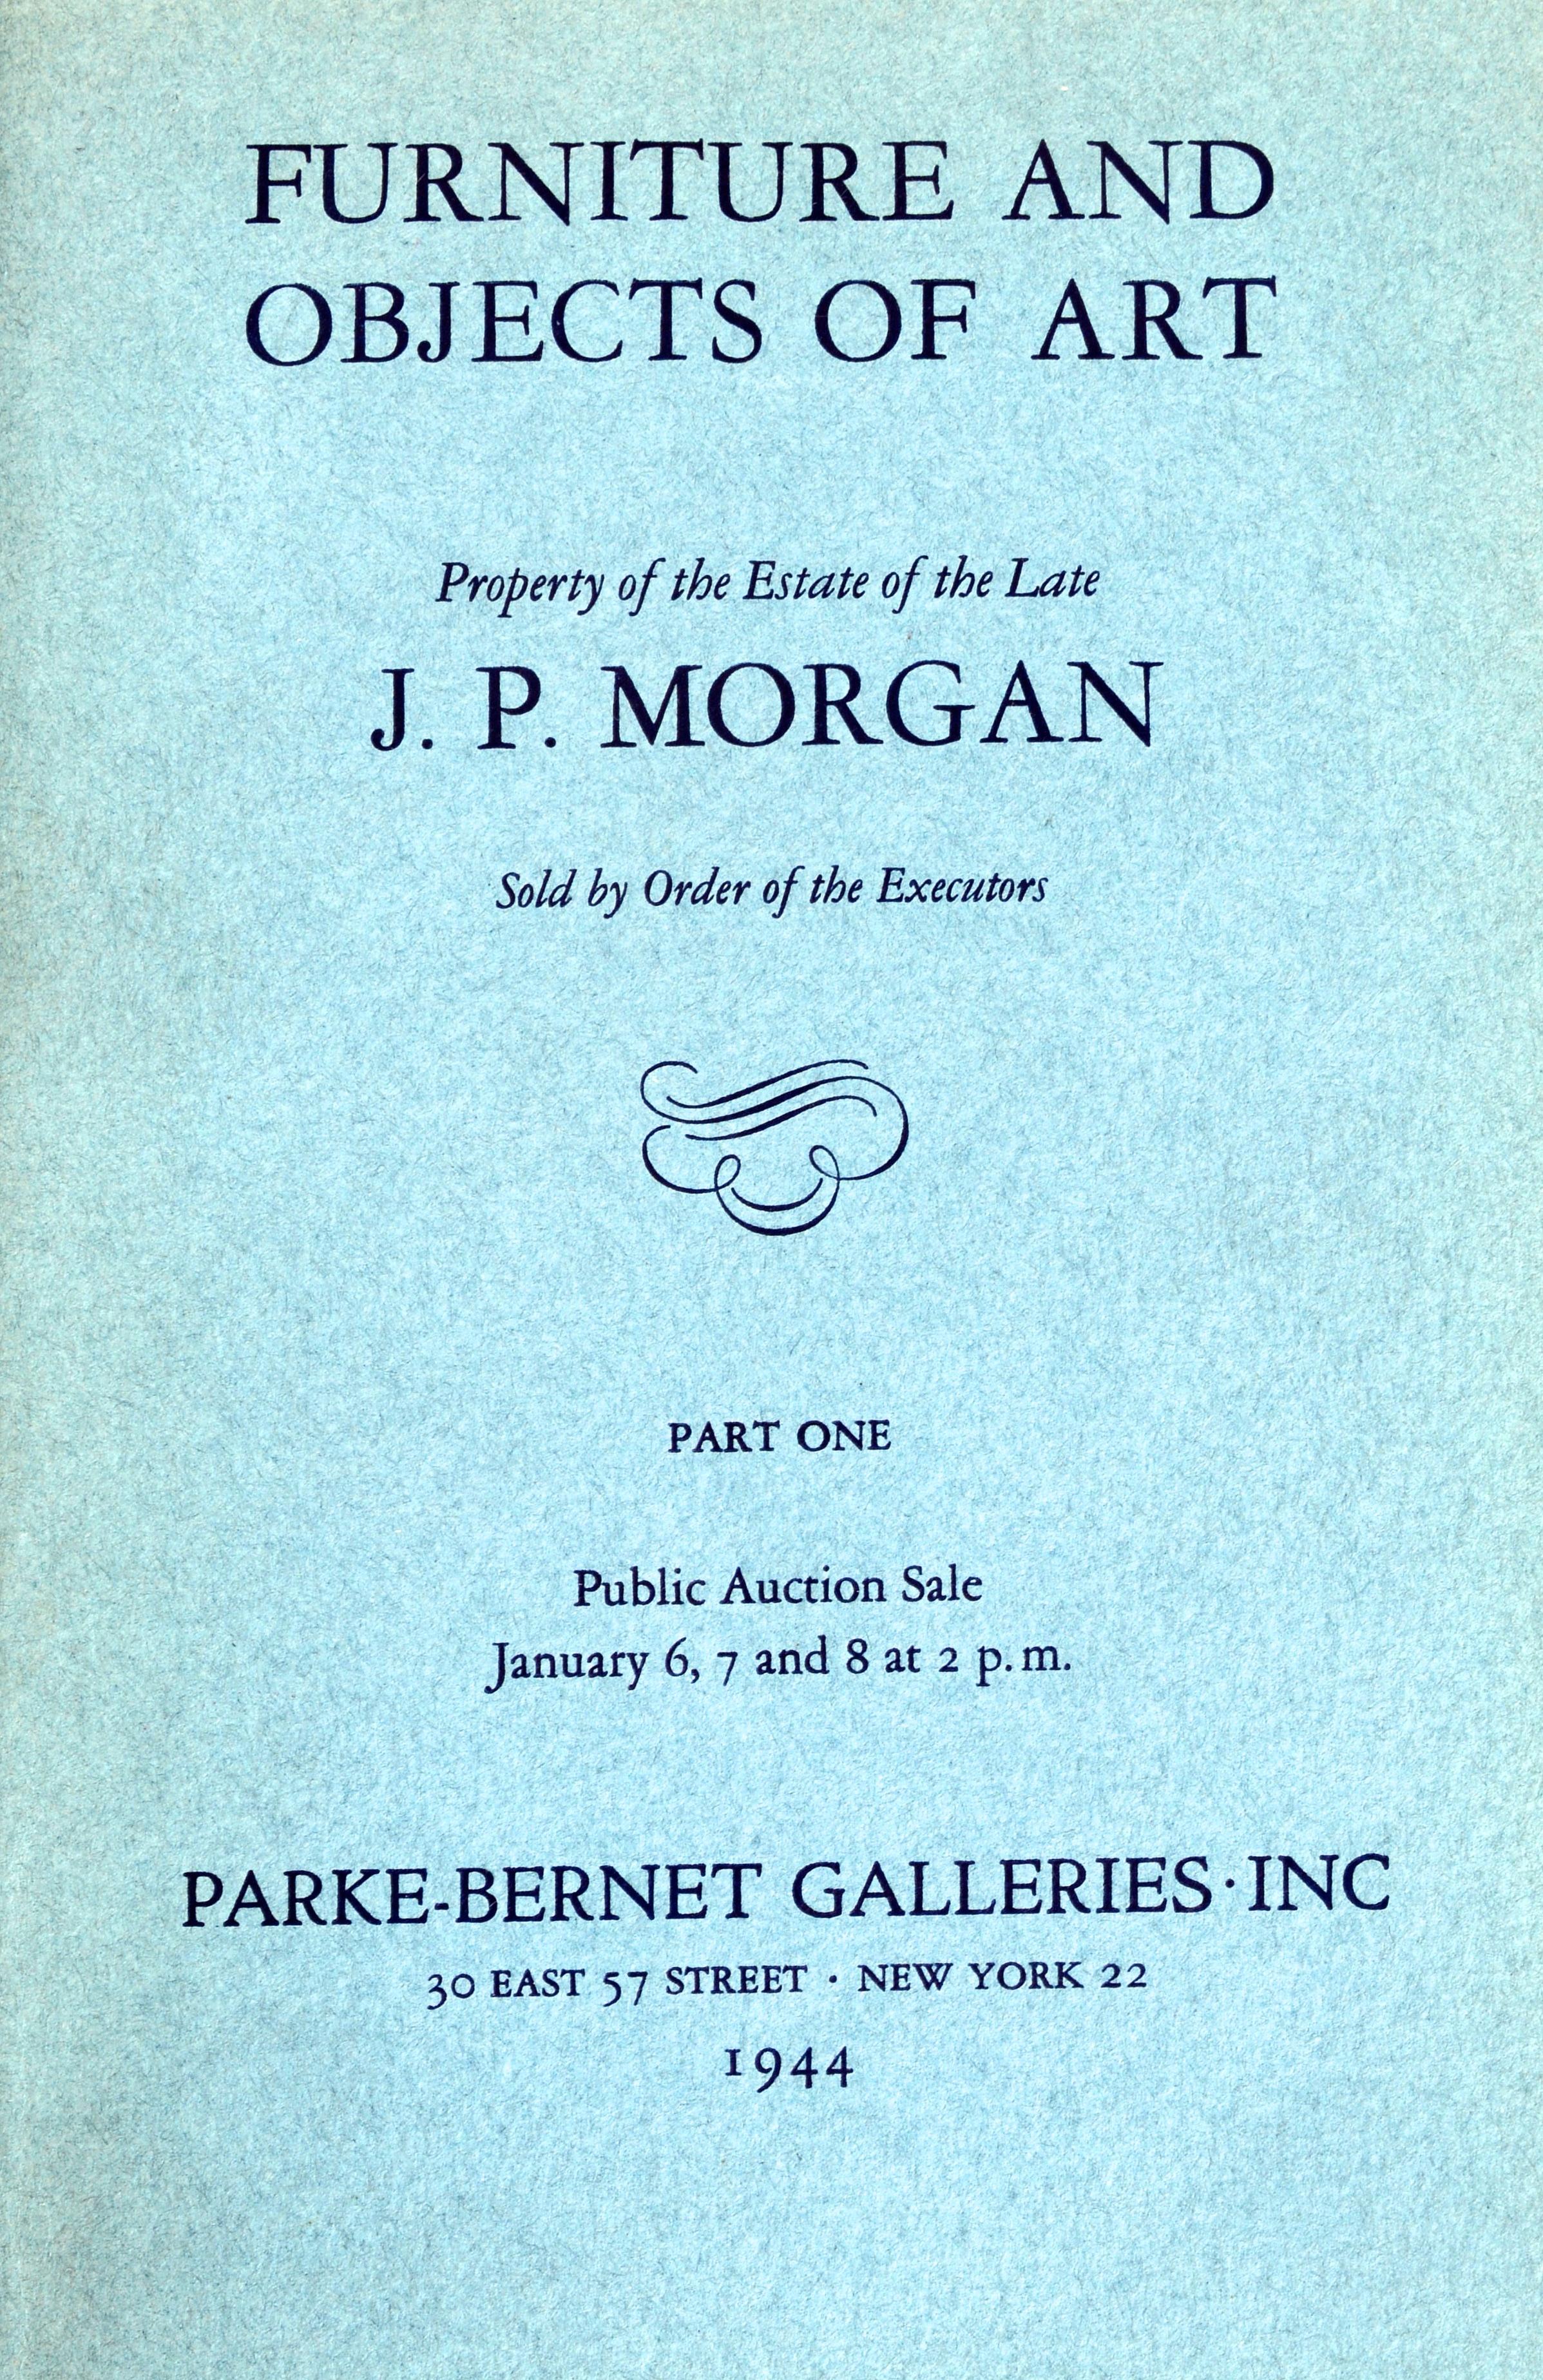 Eigentum des Nachlasses des verstorbenen J.P. Morgan, Alle 4 Kataloge aus dem berühmten Verkauf von J. P. Morgans Nachlass von 1944 und sie sind in einem gebundenen Buch. Auf den Katalogpartien sind die Verkaufspreise mit Bleistift vermerkt. Sale